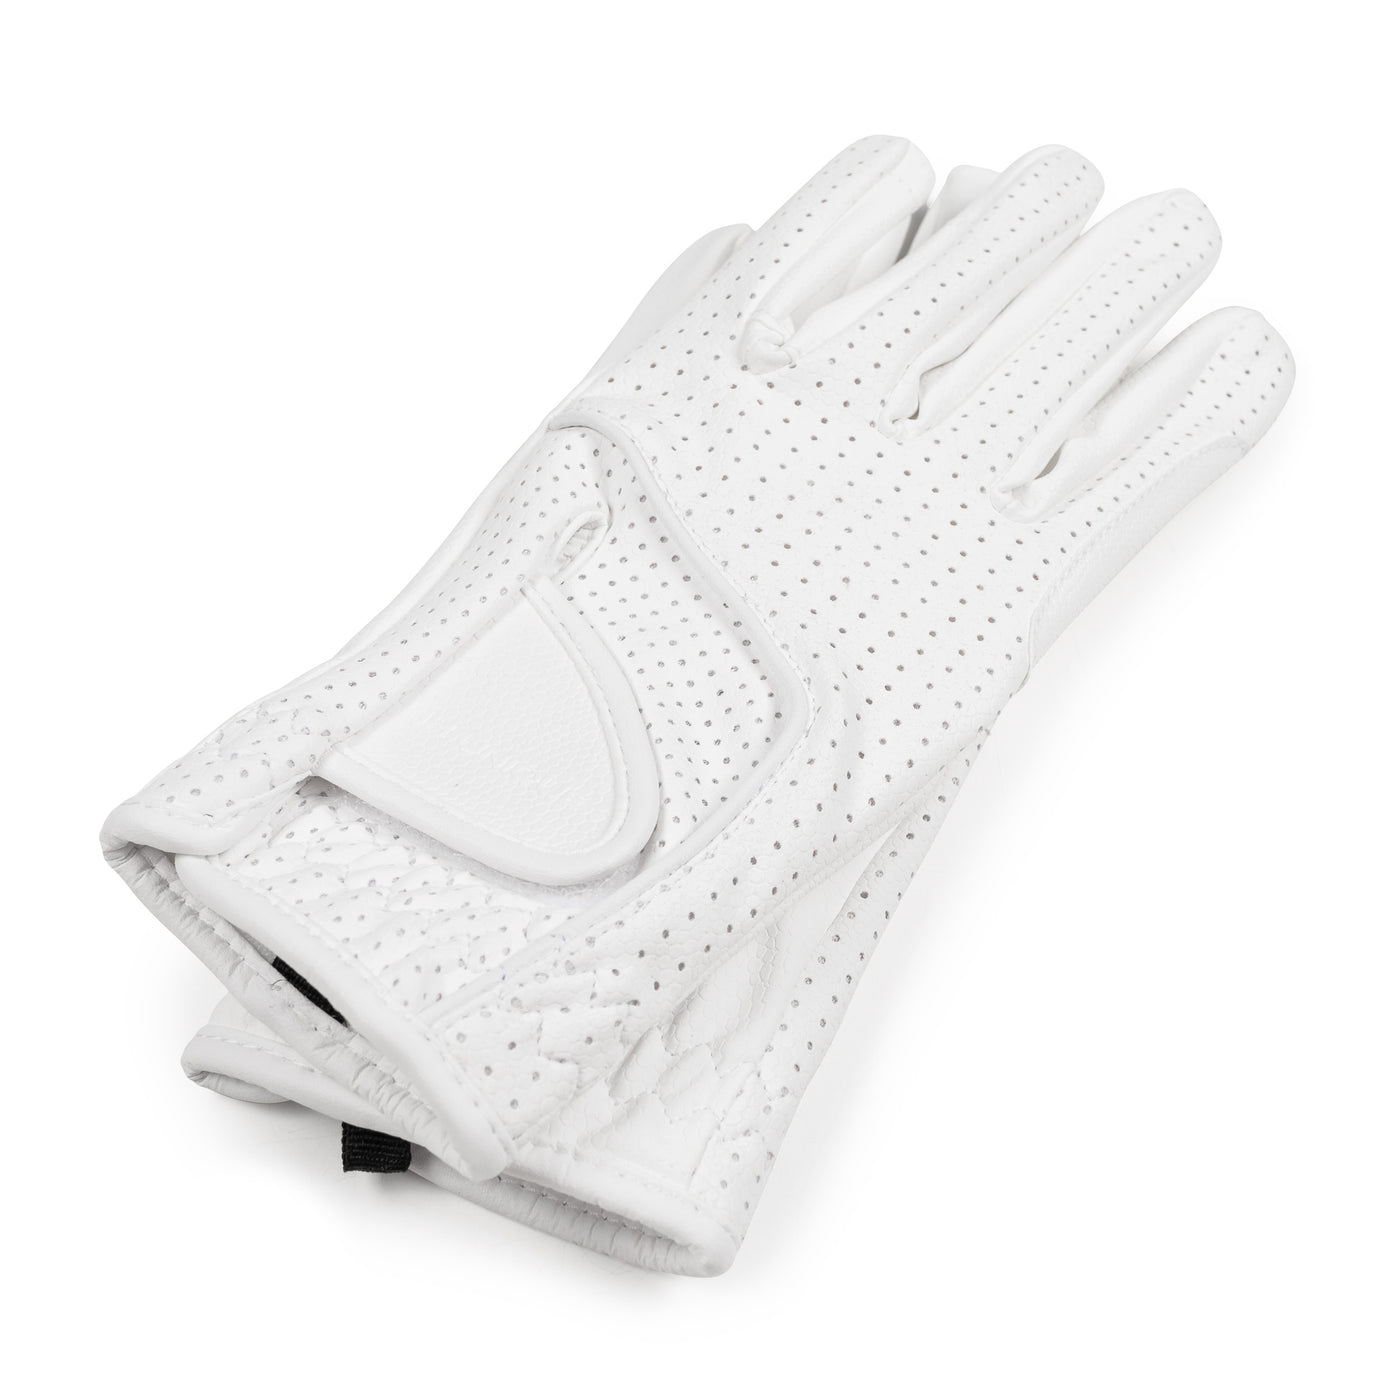 All White Air2 Gloves